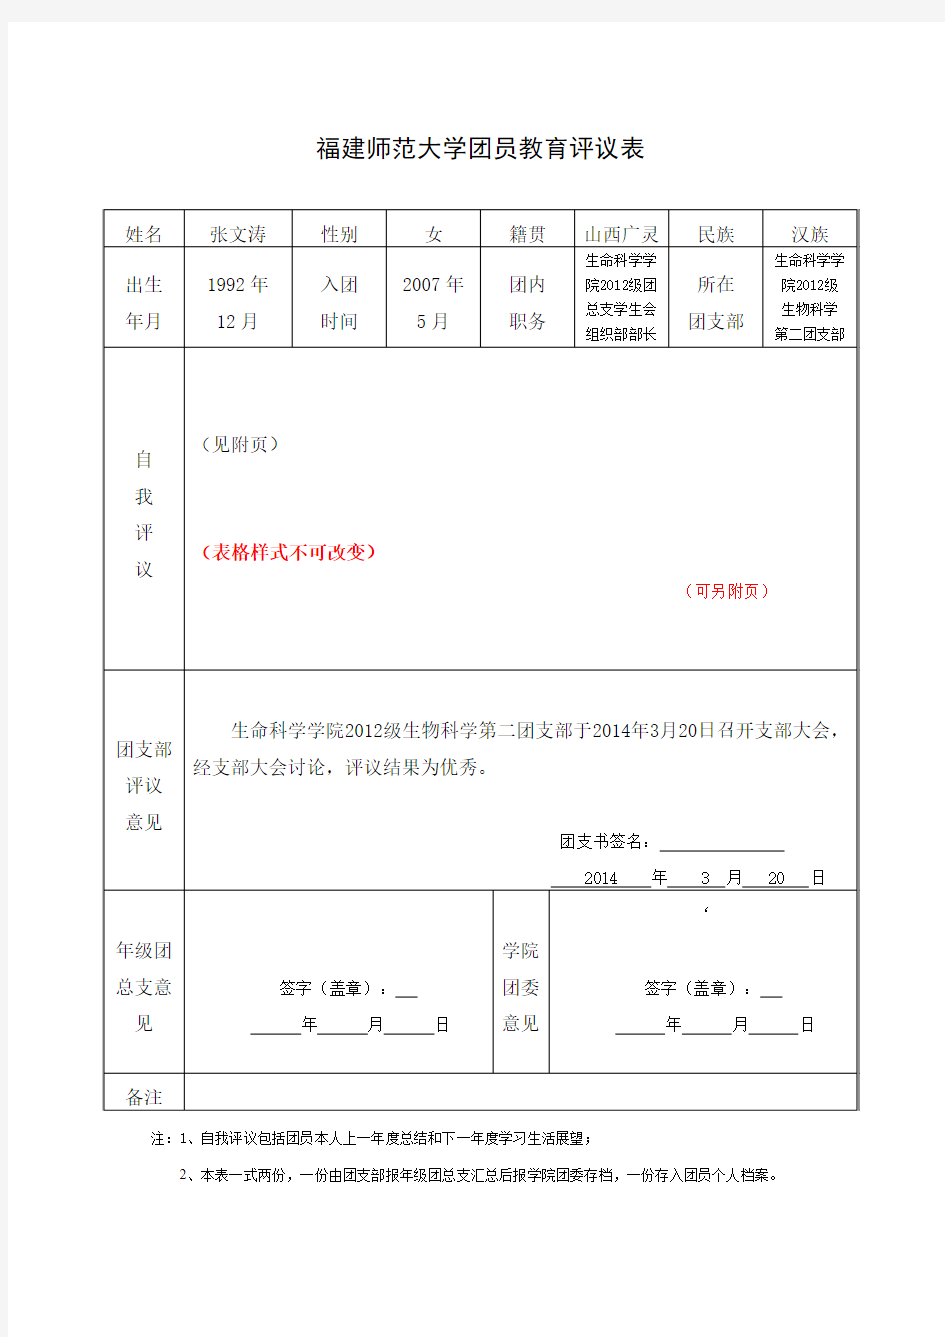 福建师范大学团员教育评议表(文涛的模板) 2